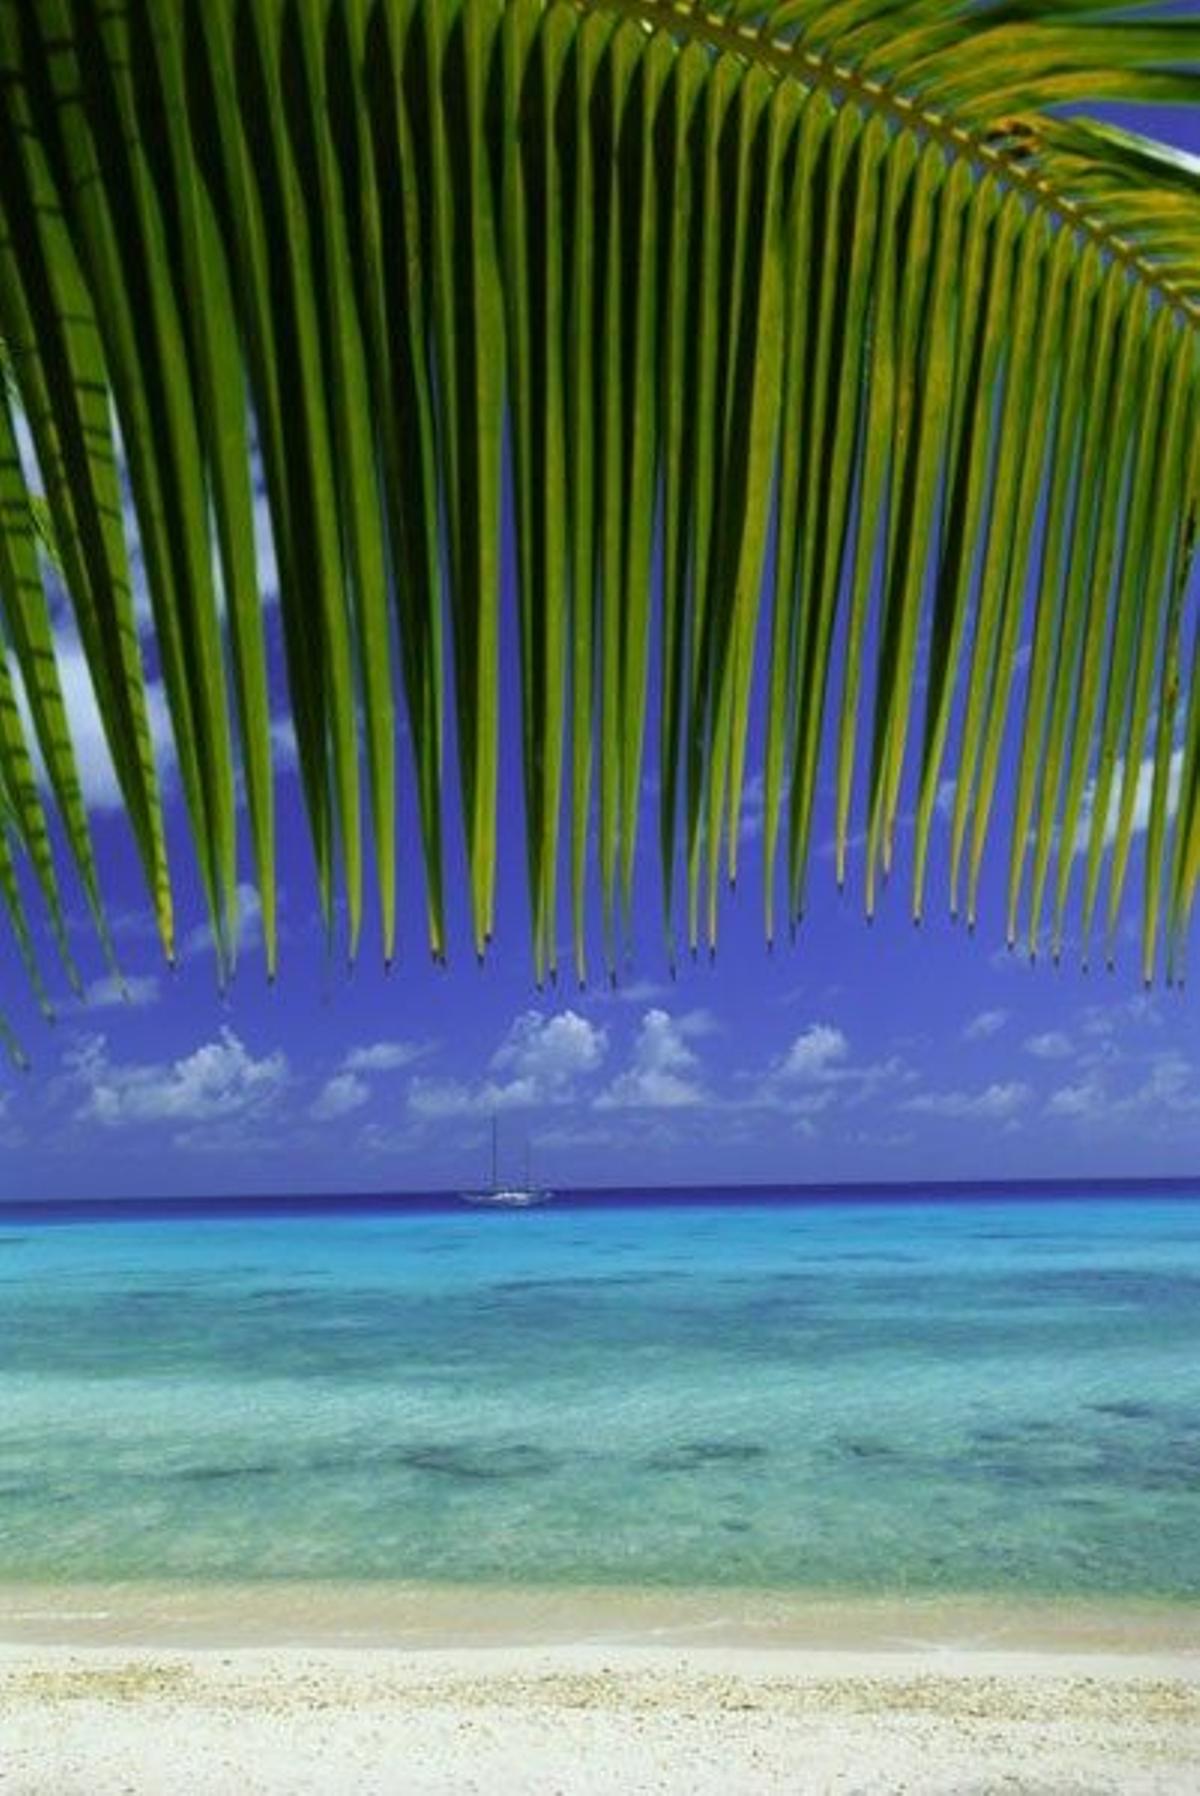 Hoja frondosa de una palmera en una de las playas del atolón de Rangiroa.